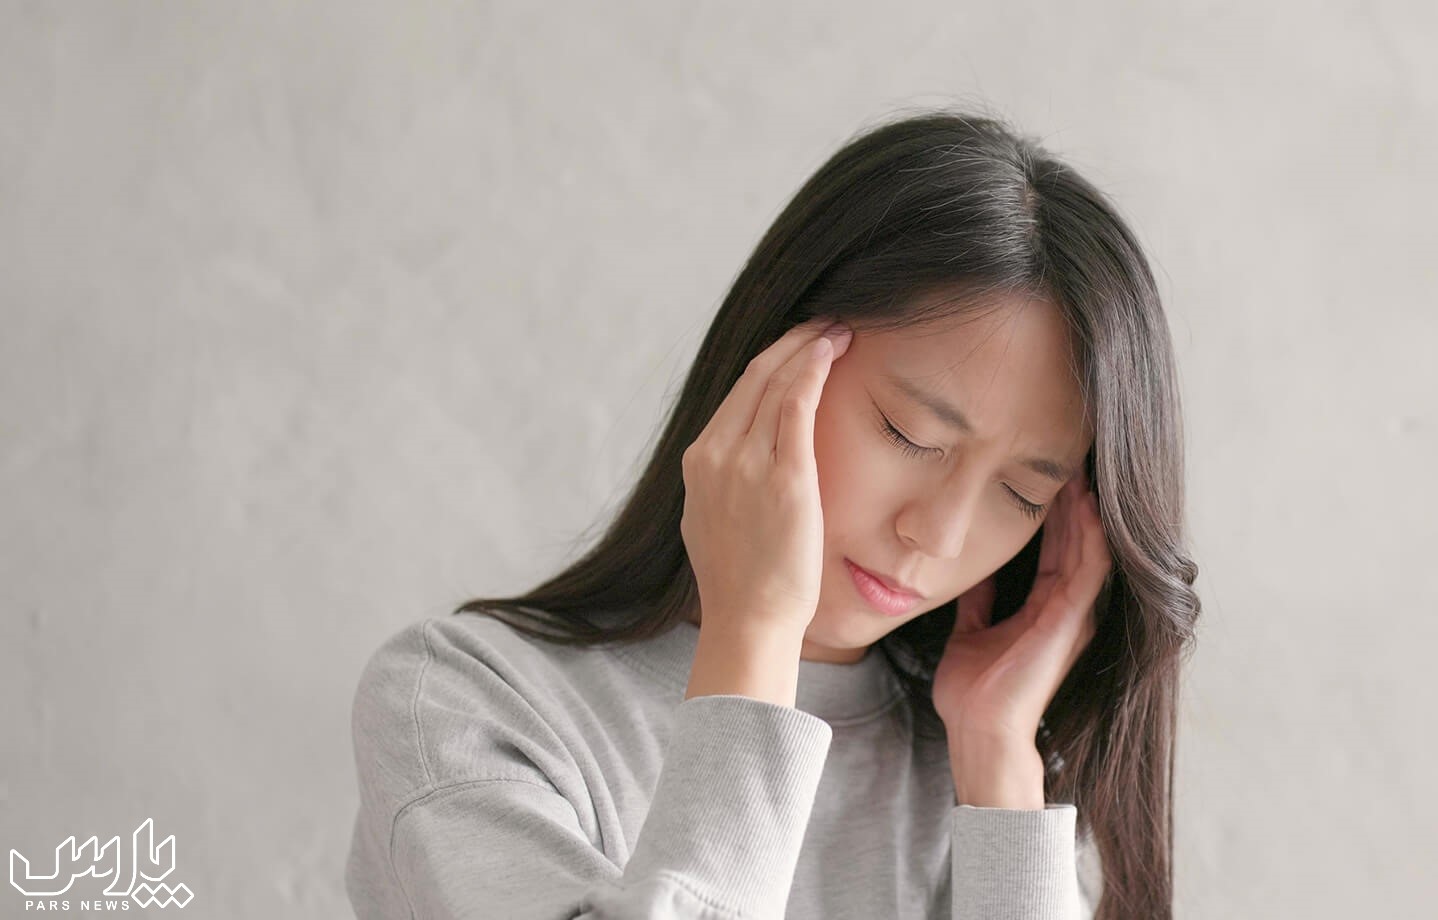 داغ شدن سر - علت سرگیجه هنگام بلند شدن